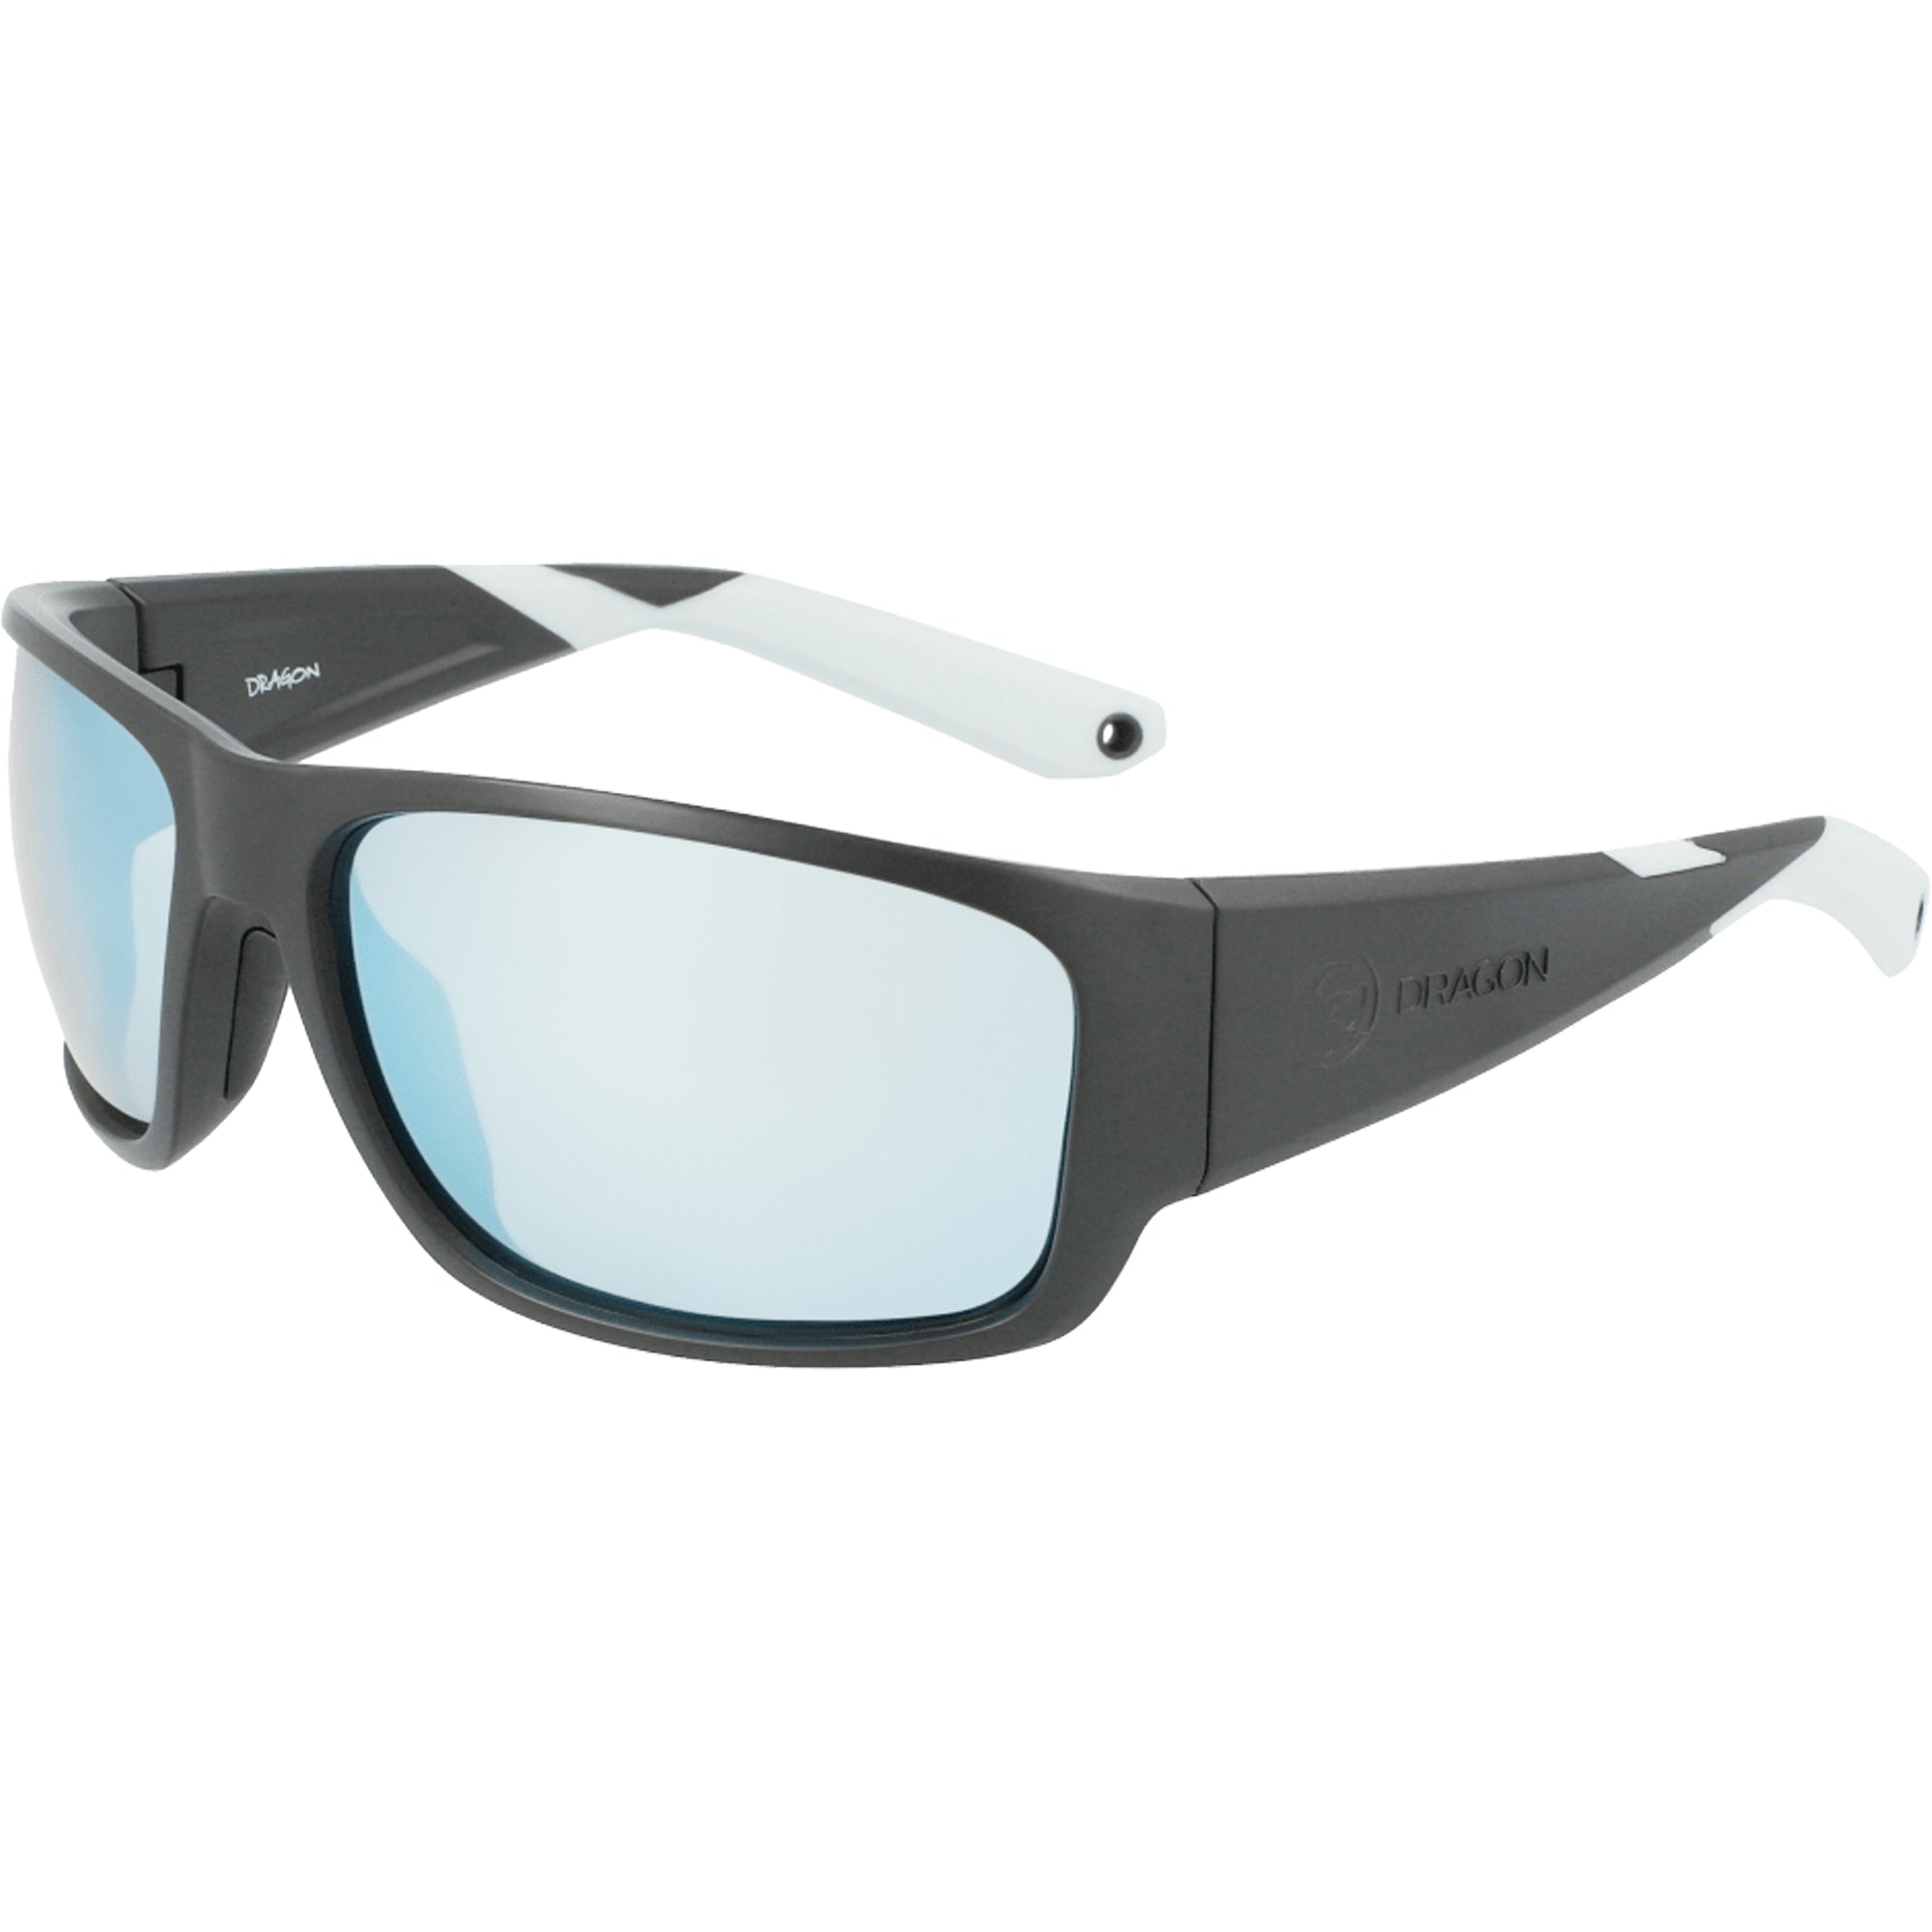 Dragon Tidal X LL H20 Men's Polarized Sunglasses